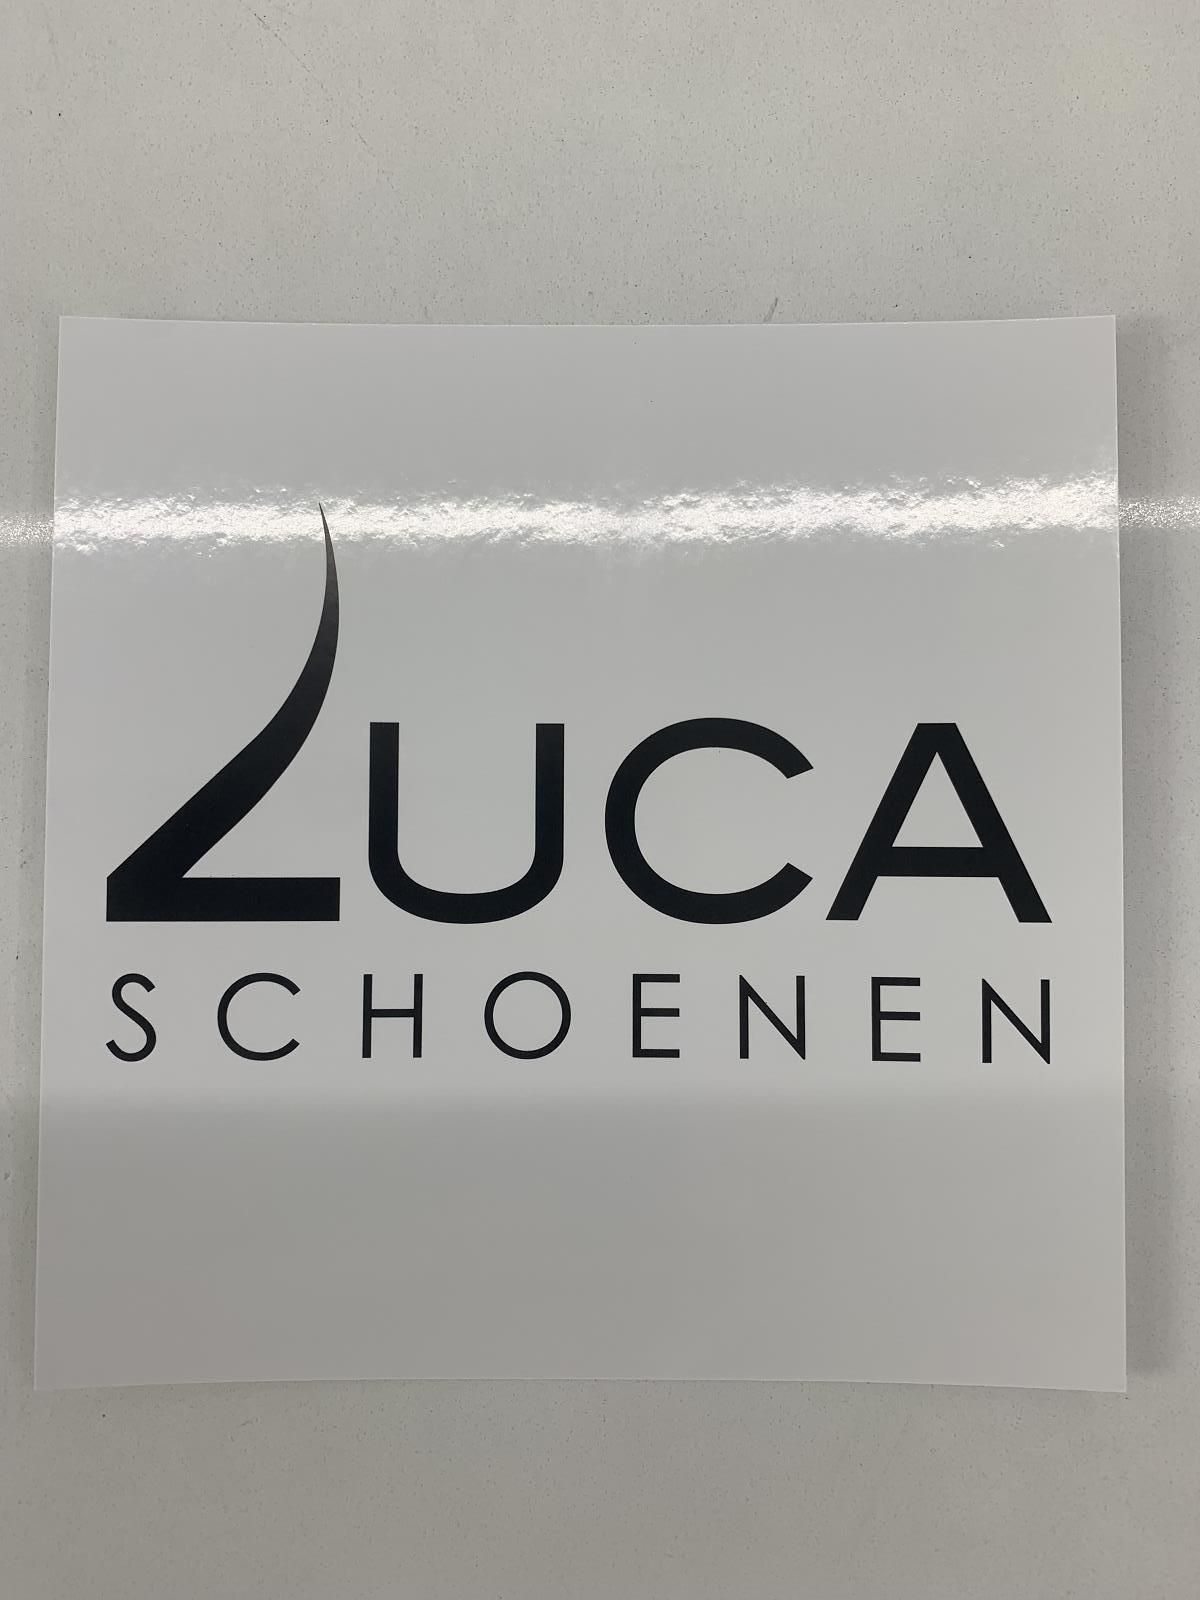     (Kadobon 200€ - ) - Schoenen Luca